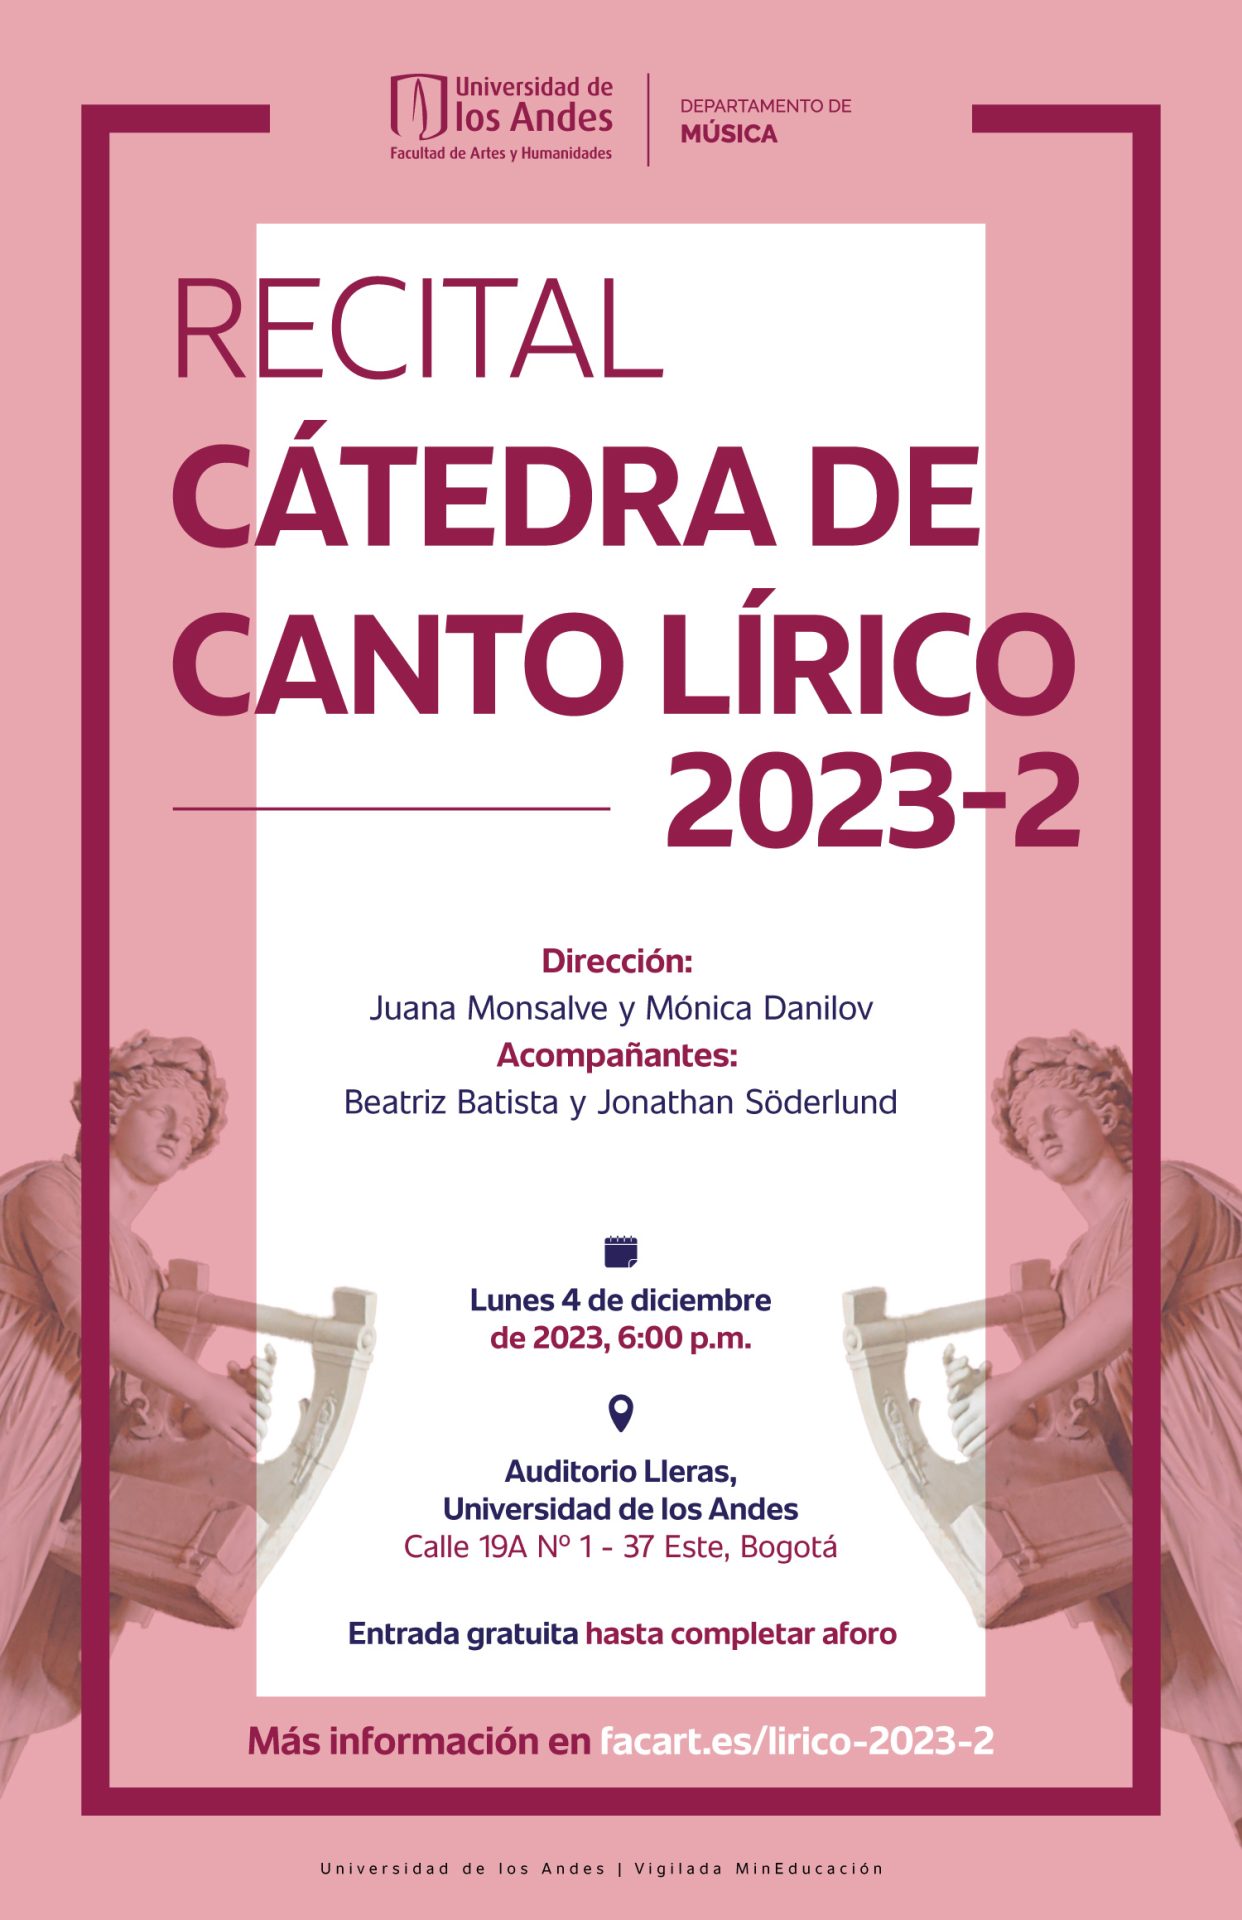 Lunes 4 de diciembre de 2023 a las 6:00 p.m. en el Auditorio Lleras, Universidad de los Andes